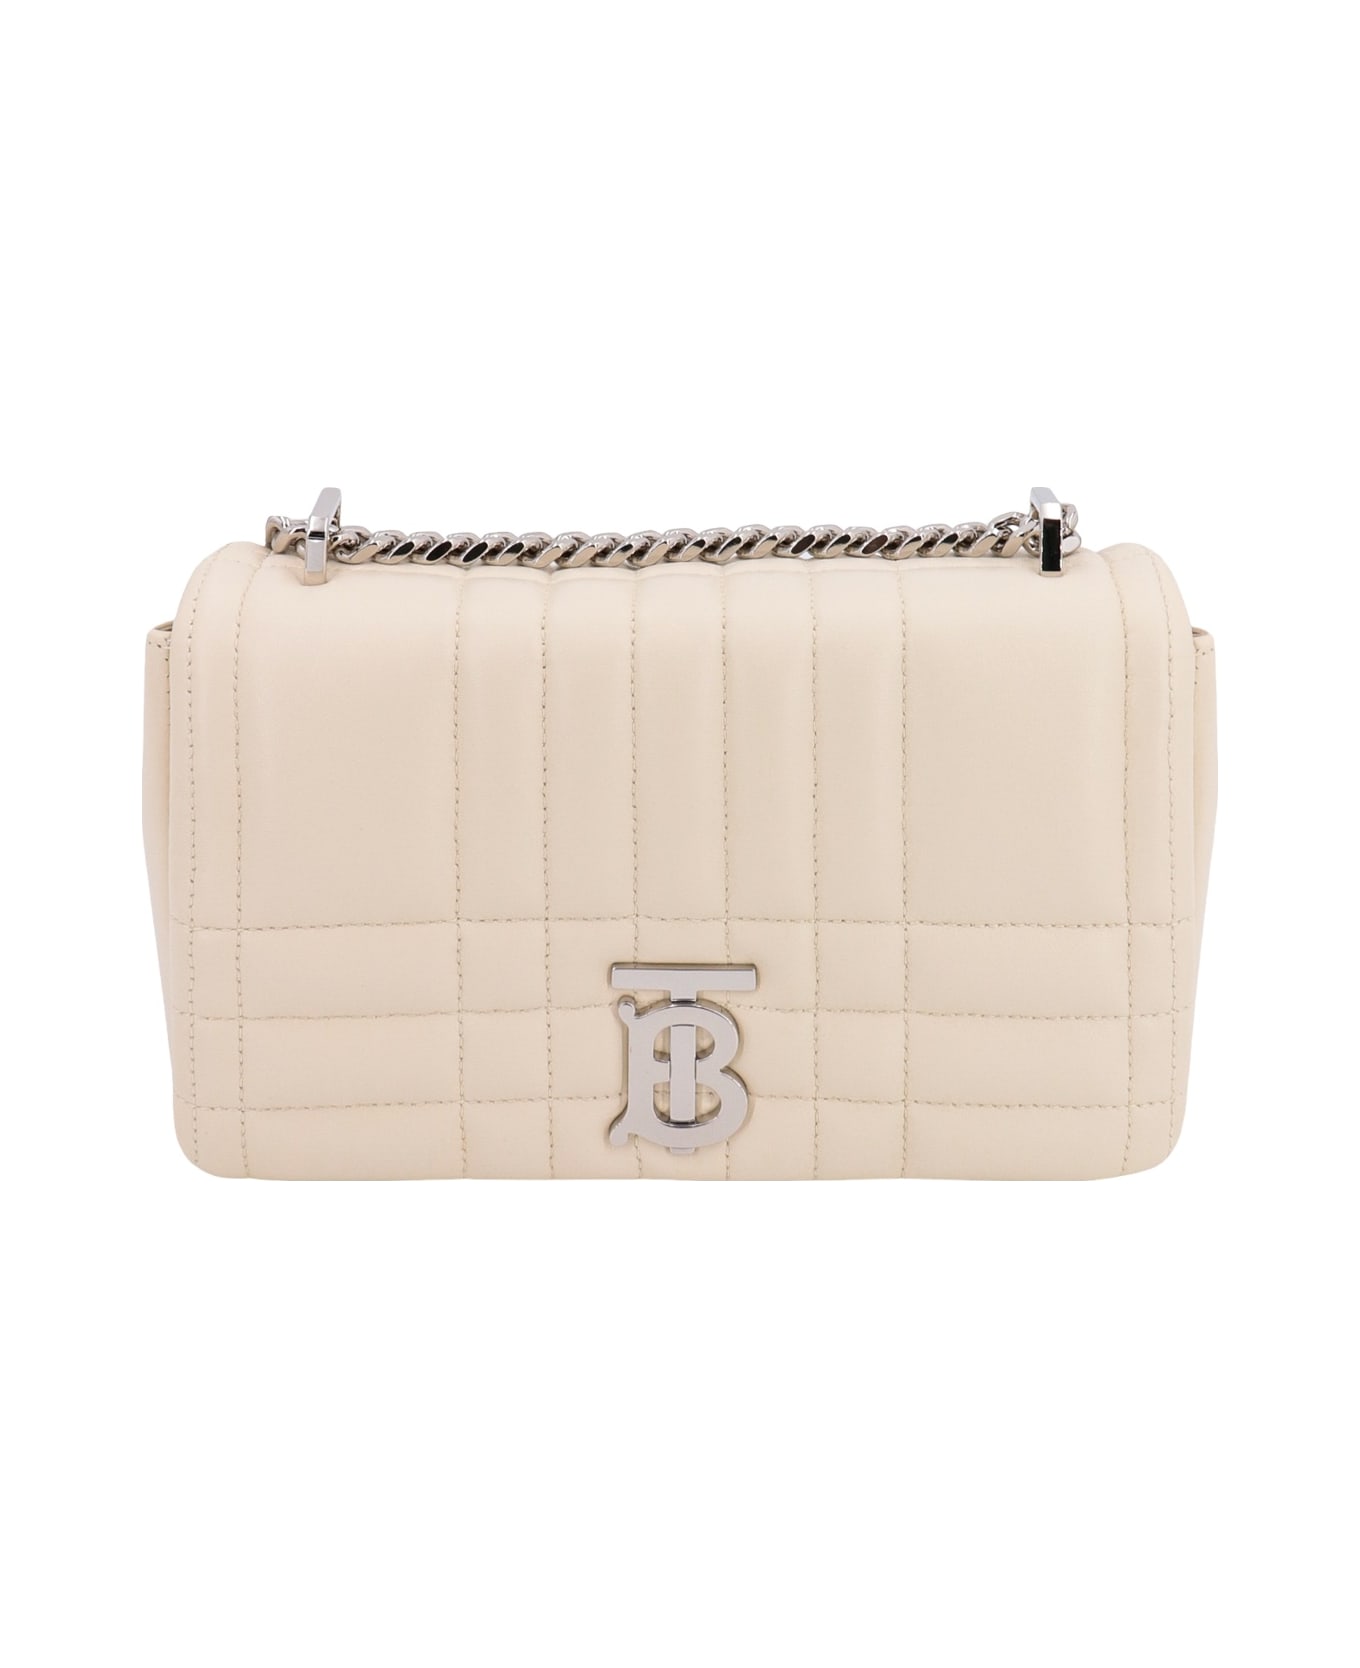 Burberry Lola Shoulder Bag - White